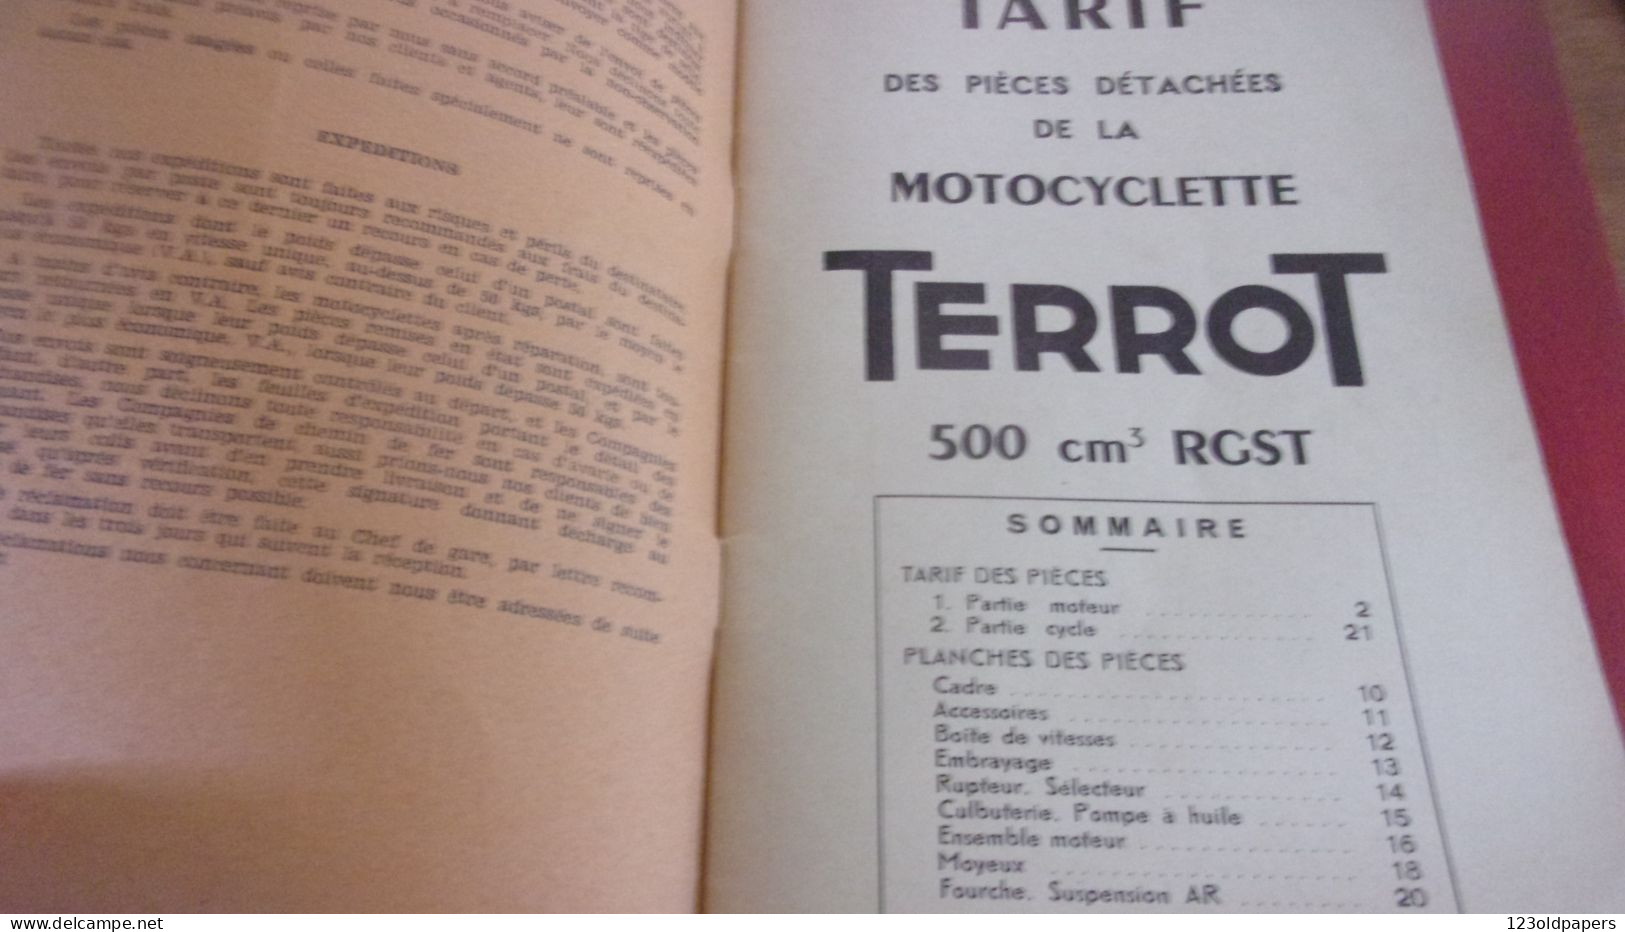 Catalogue 1951 TARIF DES PIECES DETACHEES  Cycles Motocyclettes "TERROT"  DIJON 500 CM3 TYPE RGST 32 PAGES - Verkehr & Transport